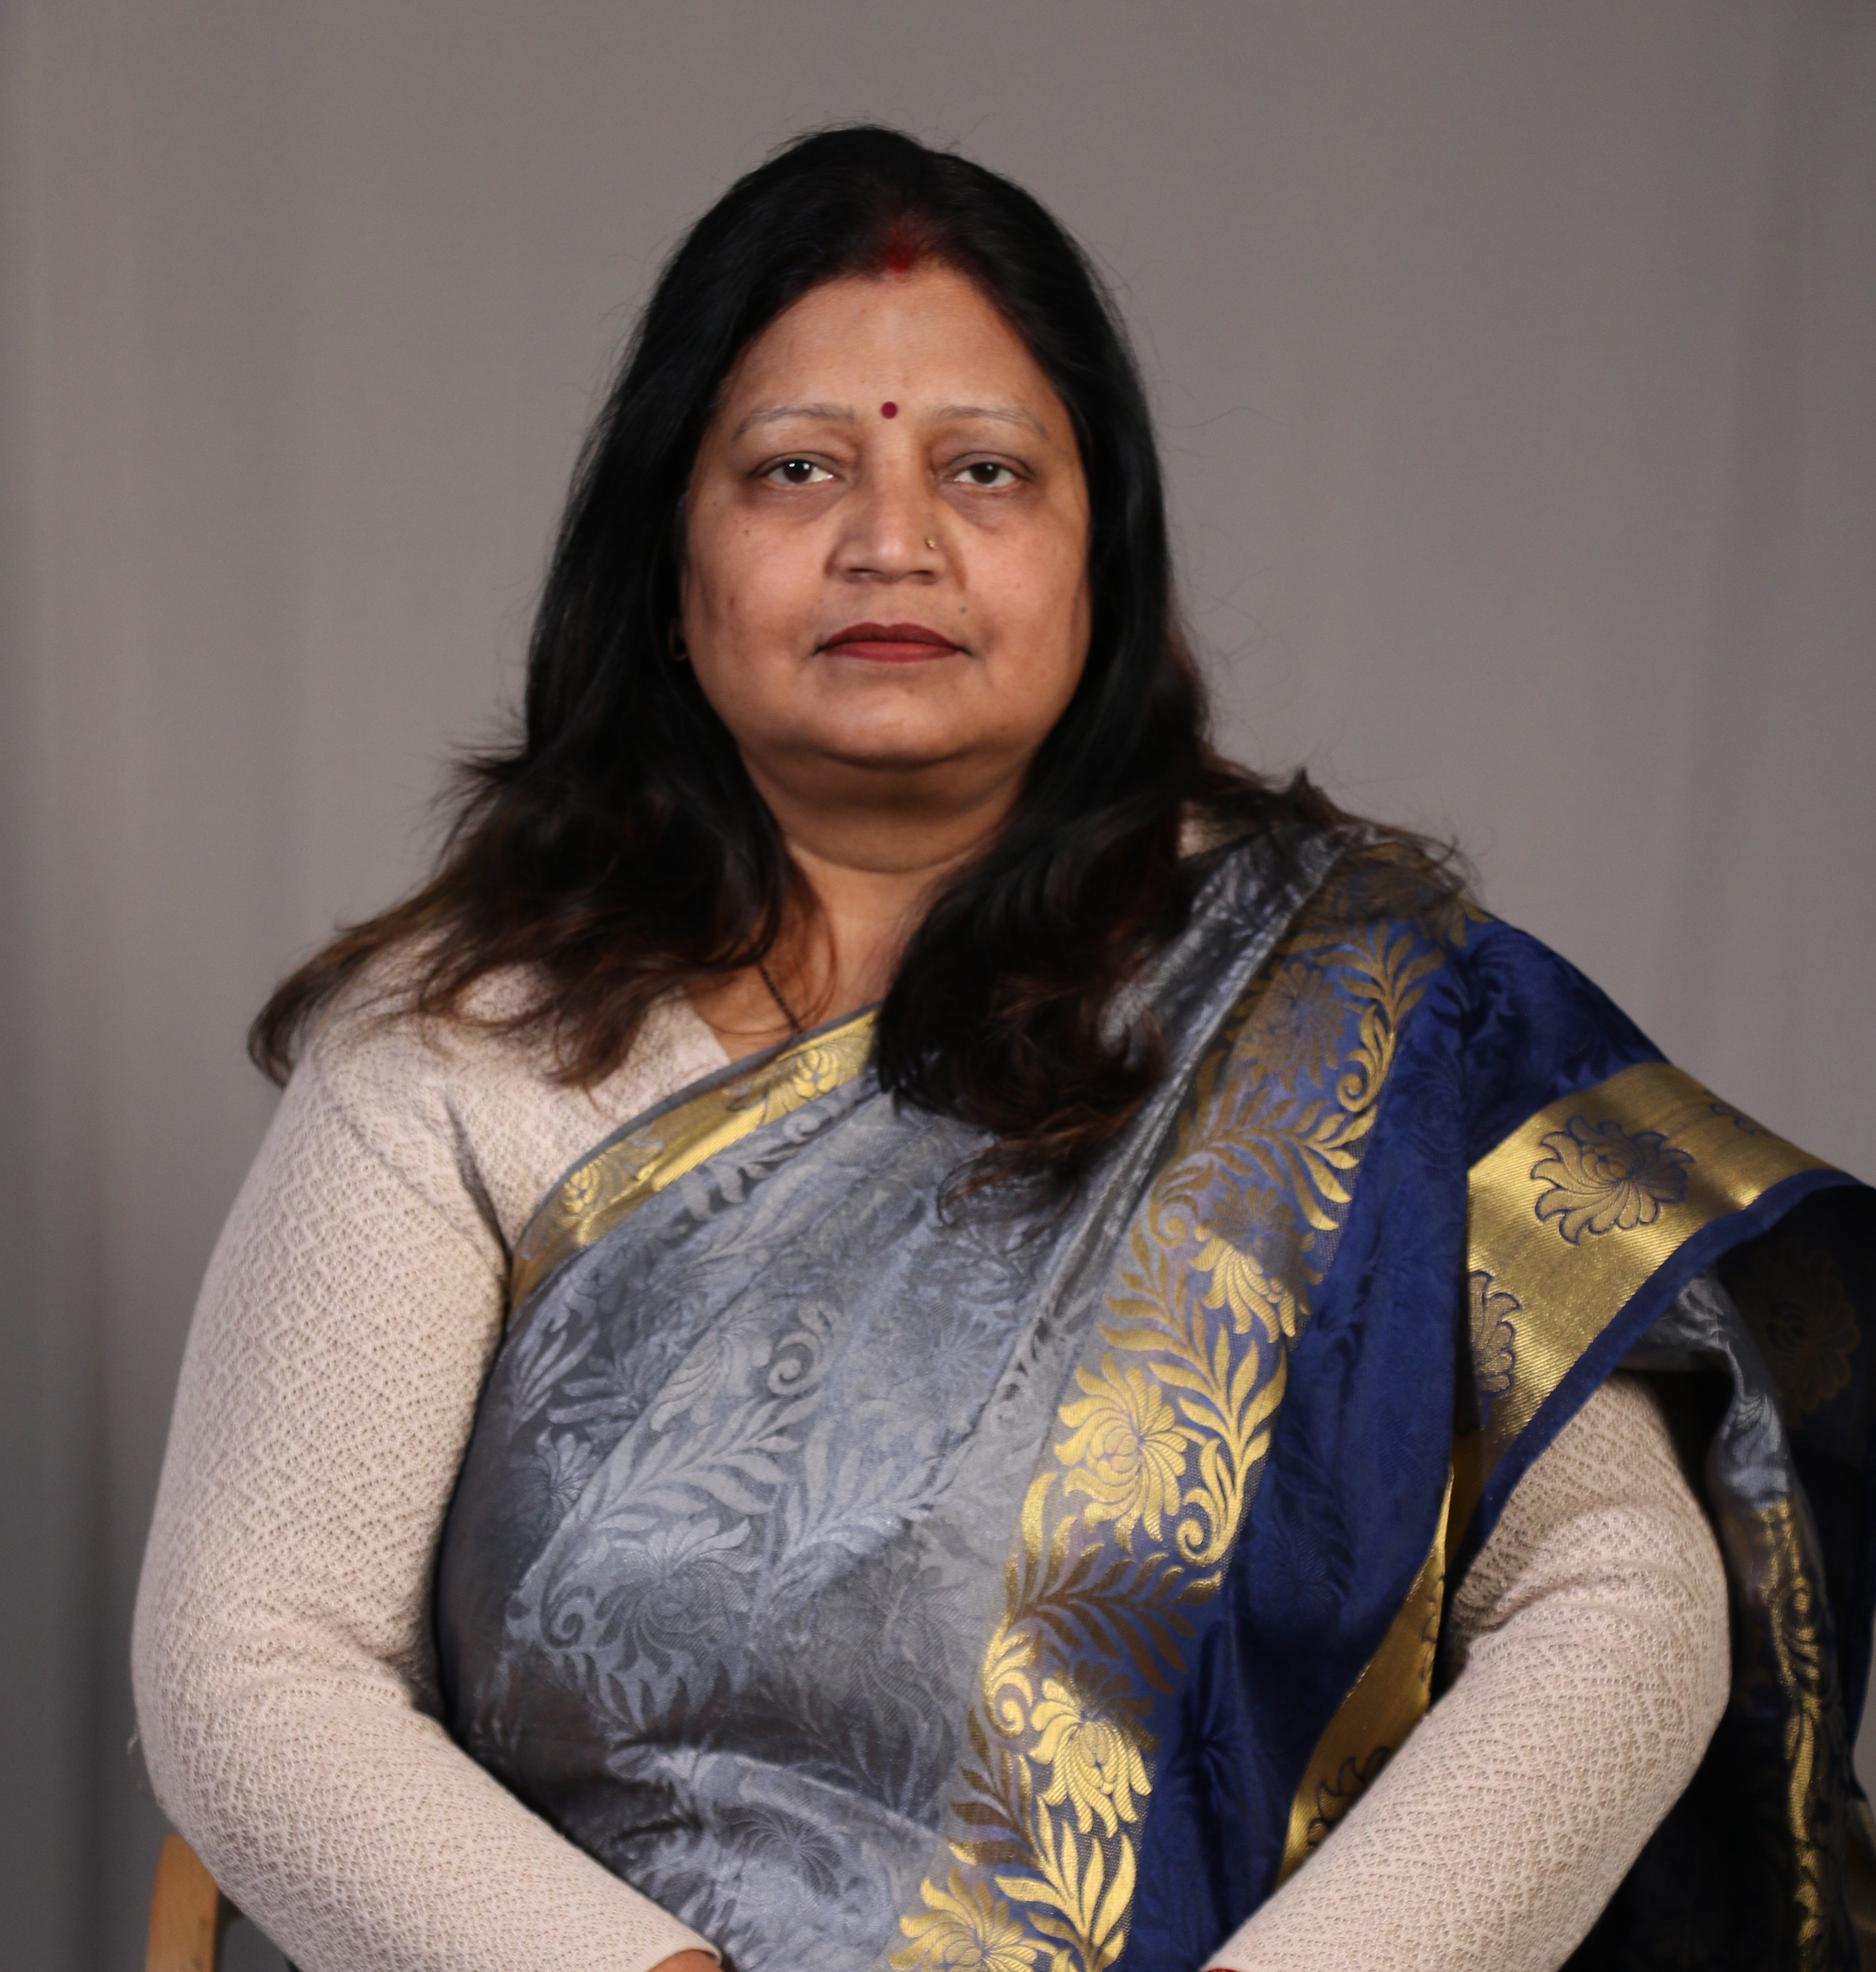 Dr. Priyanka Srivastava